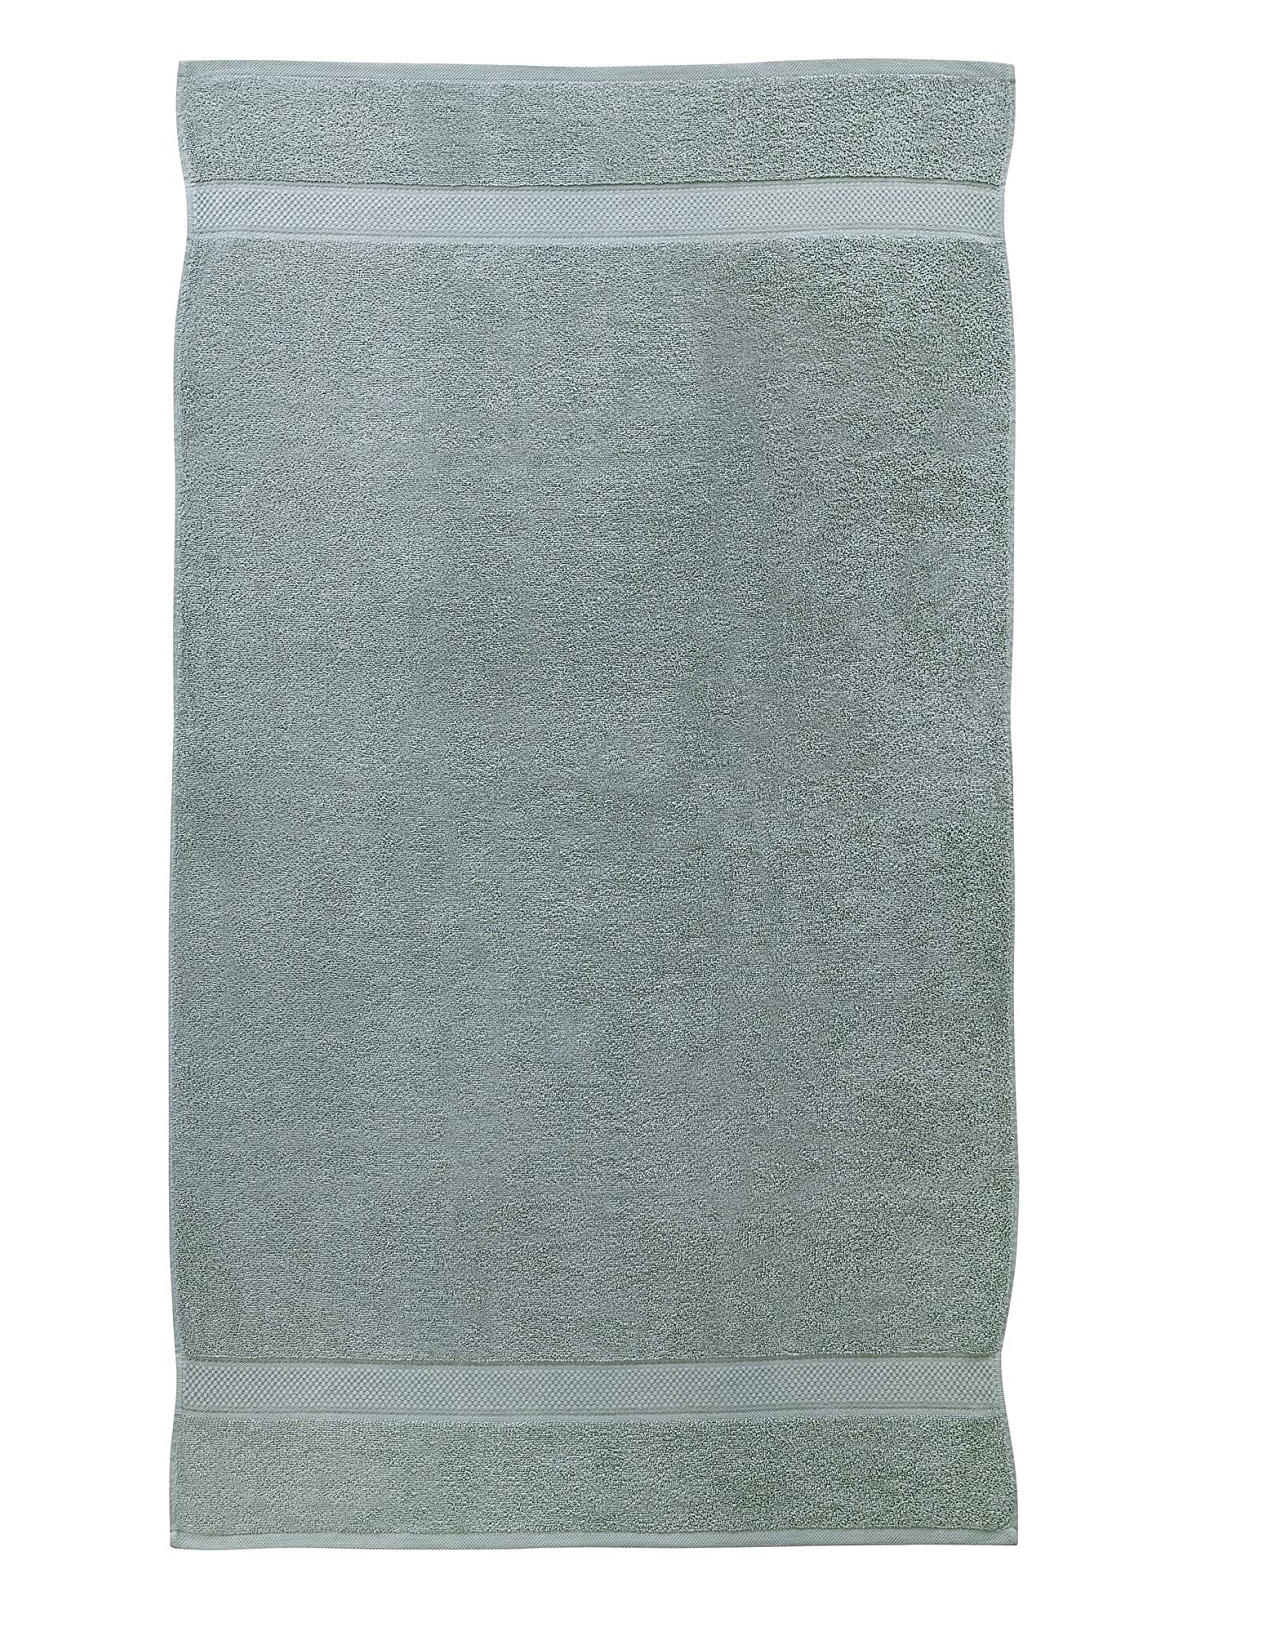 4 Pcs Hand Cotton Towel Bale Set Silver Plain